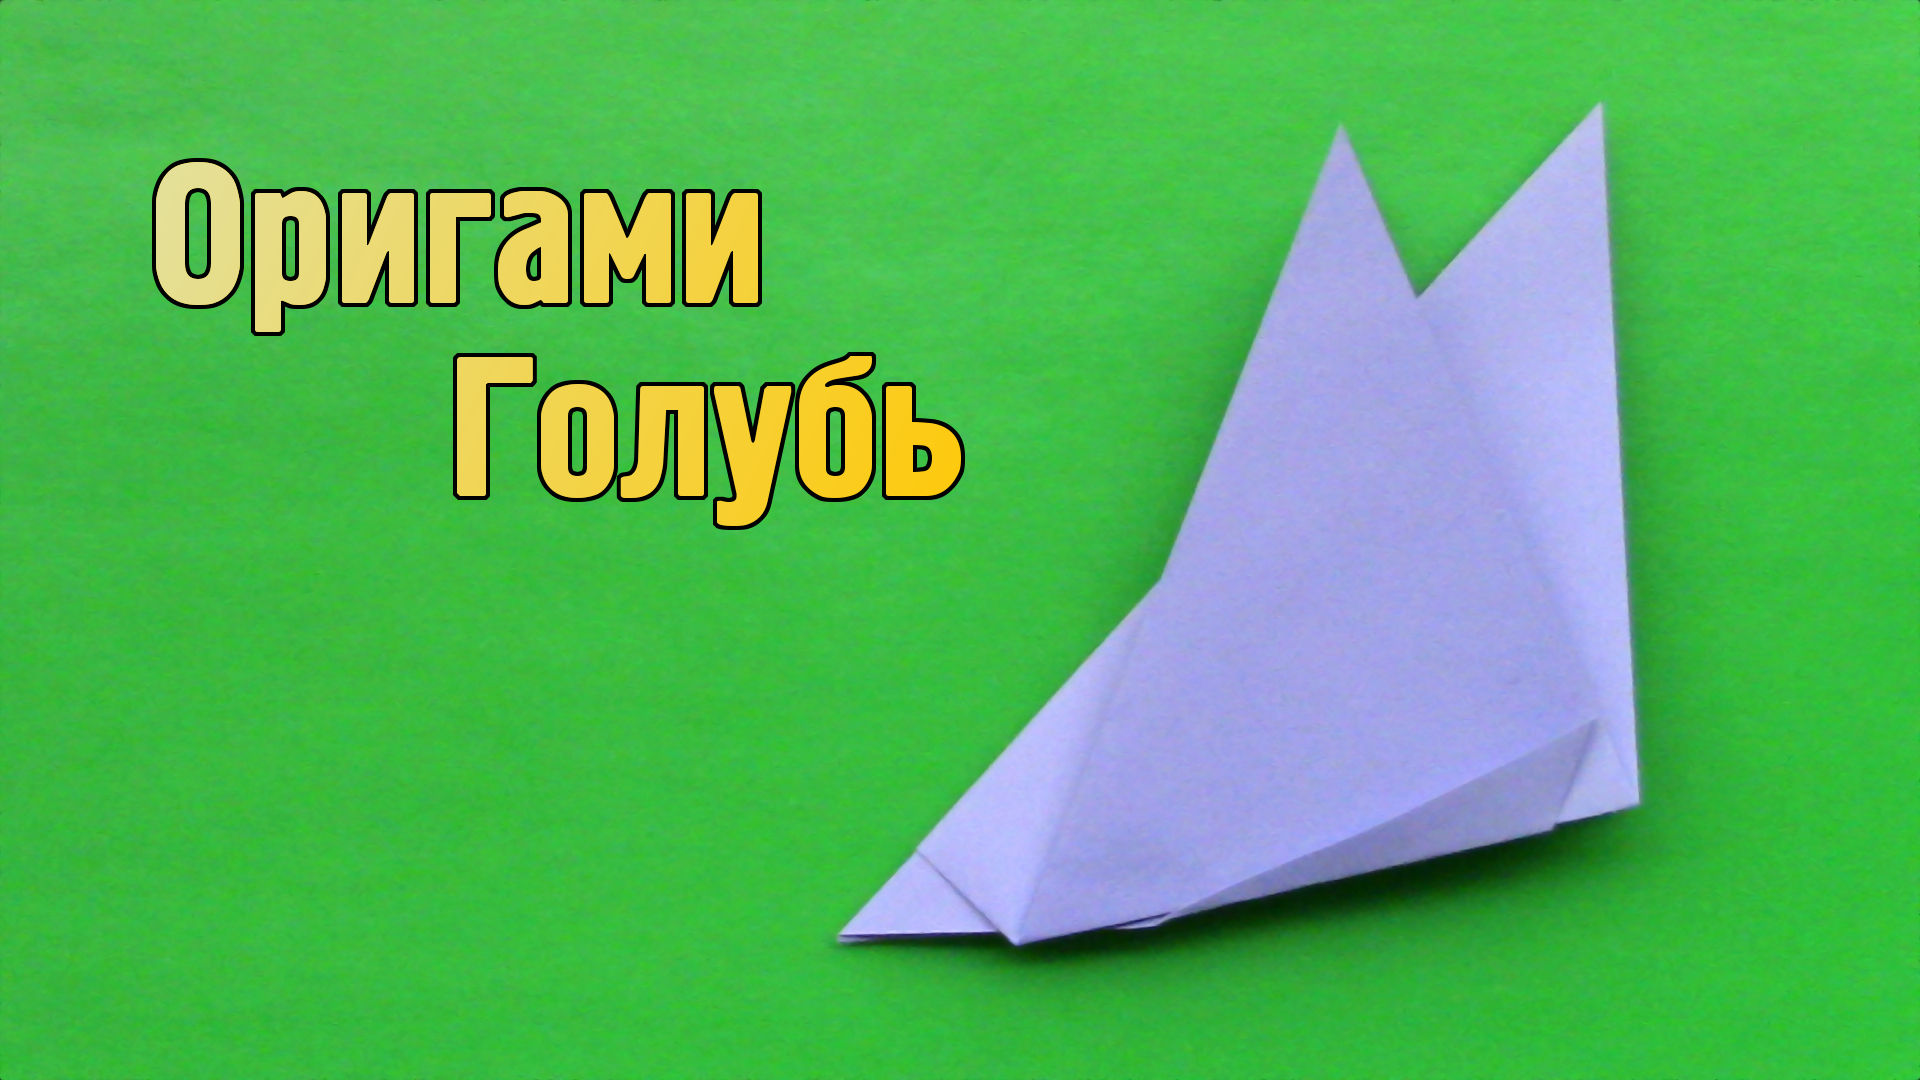 Как сделать Голубя из бумаги | Простой оригами Голубь своими руками  | Фигурка Птицы для детей